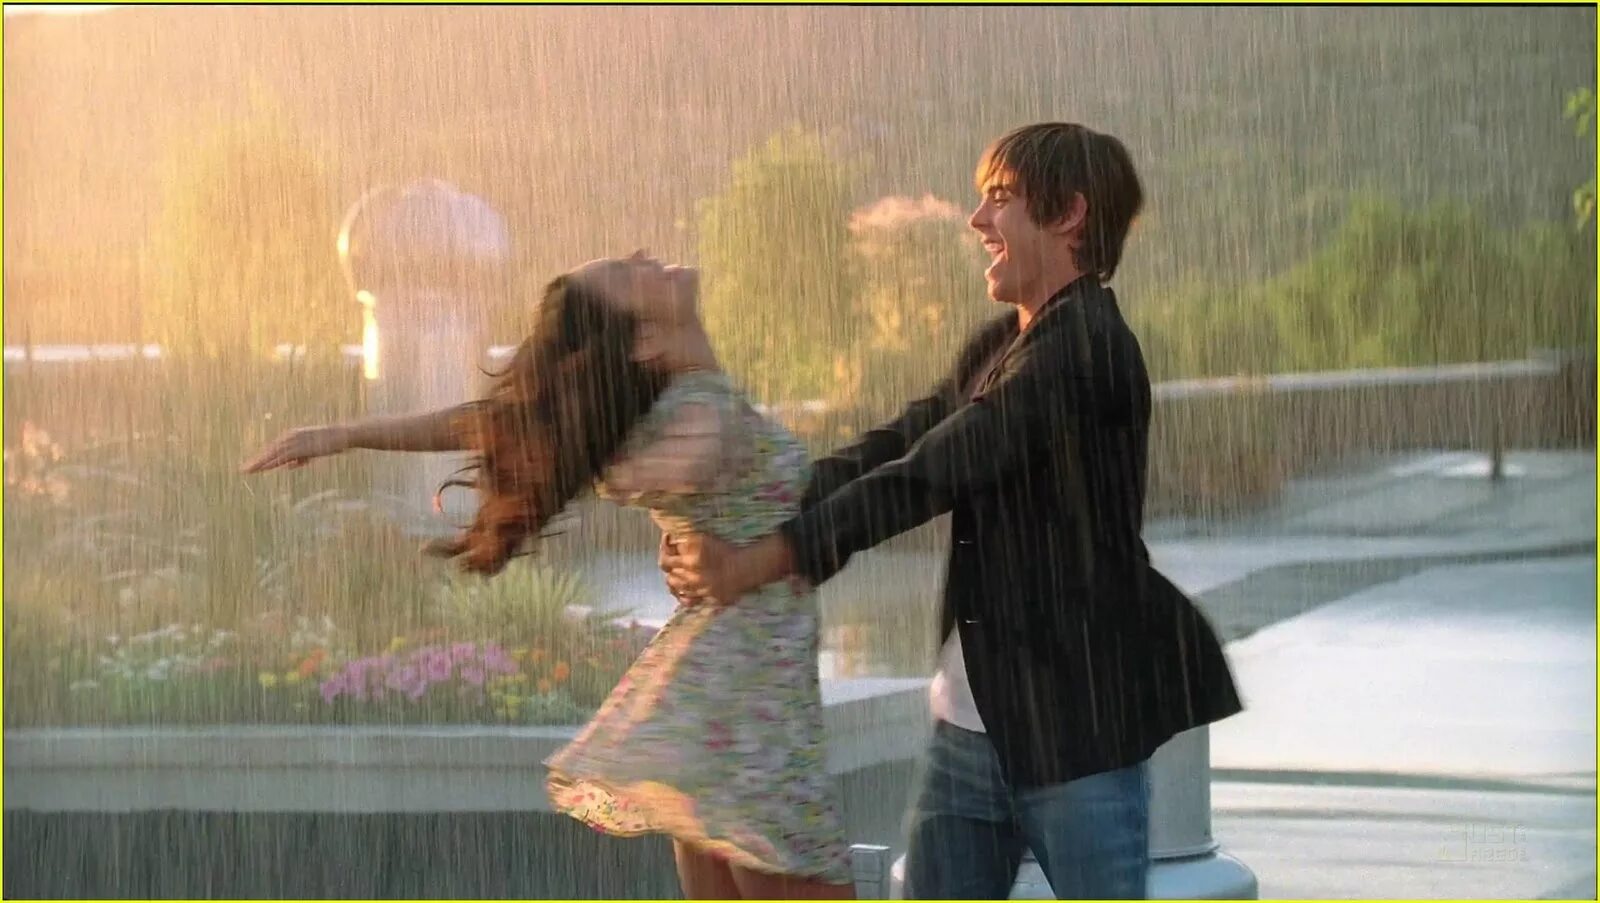 Песни мой свет и дождь. Вивиан Грин танцевать под дождём. Гулять под дождем. Прогулка вдвоем под дождем. Пара под дождем.